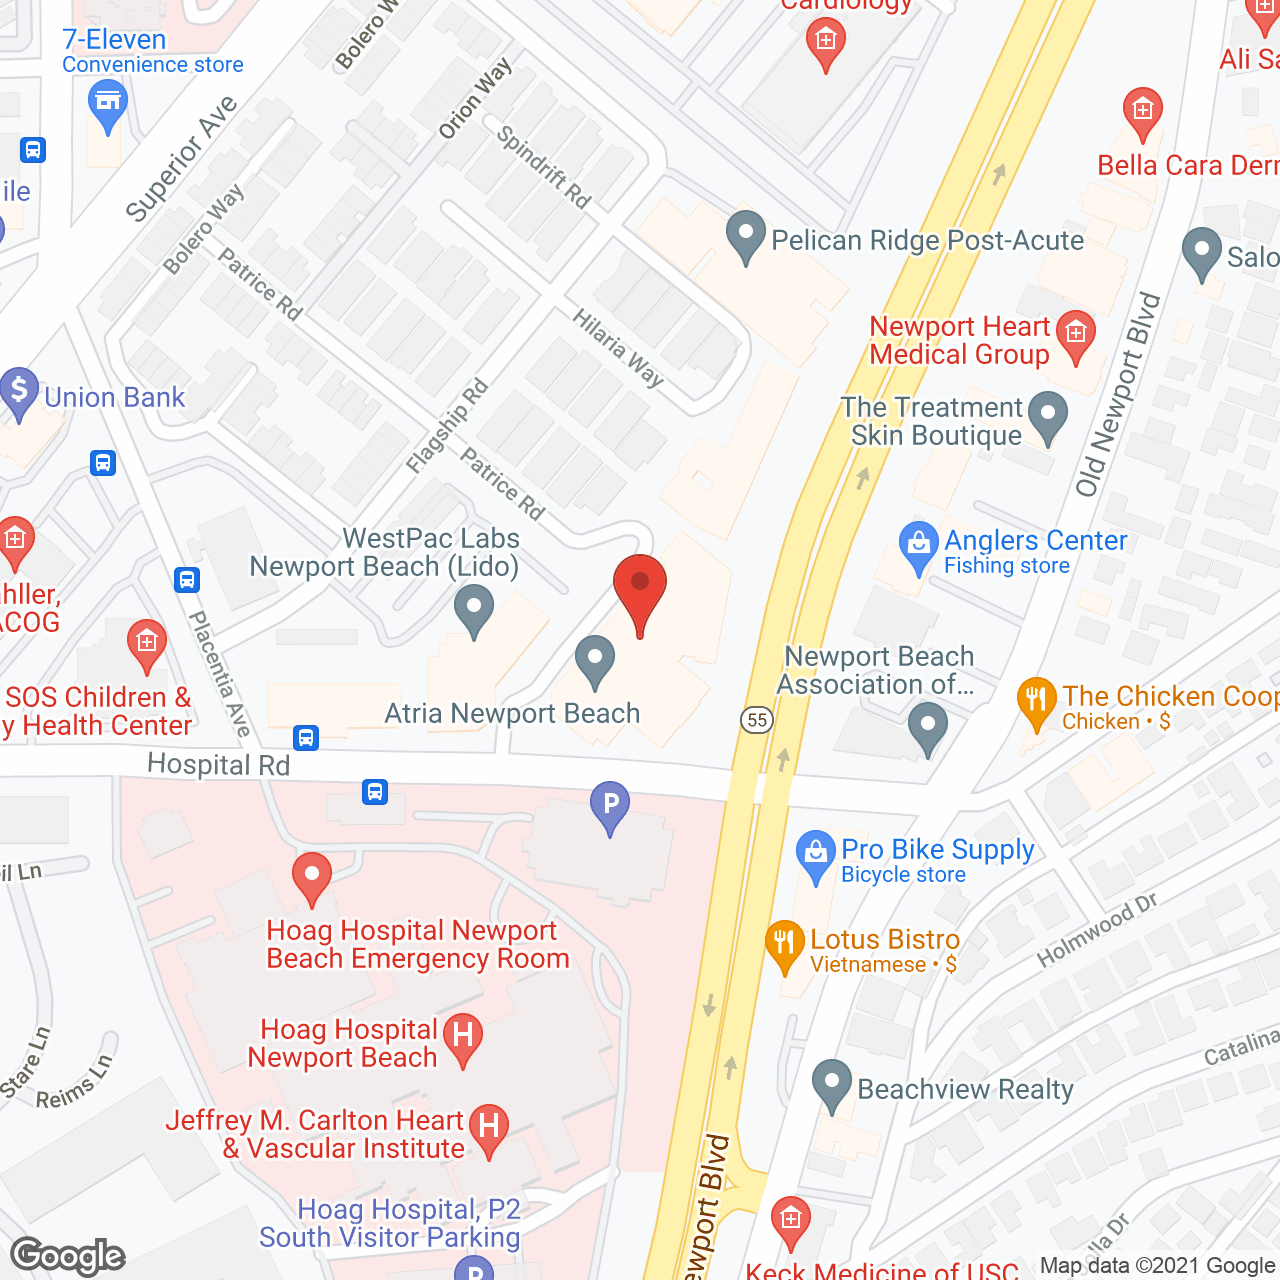 Atria Newport Beach in google map